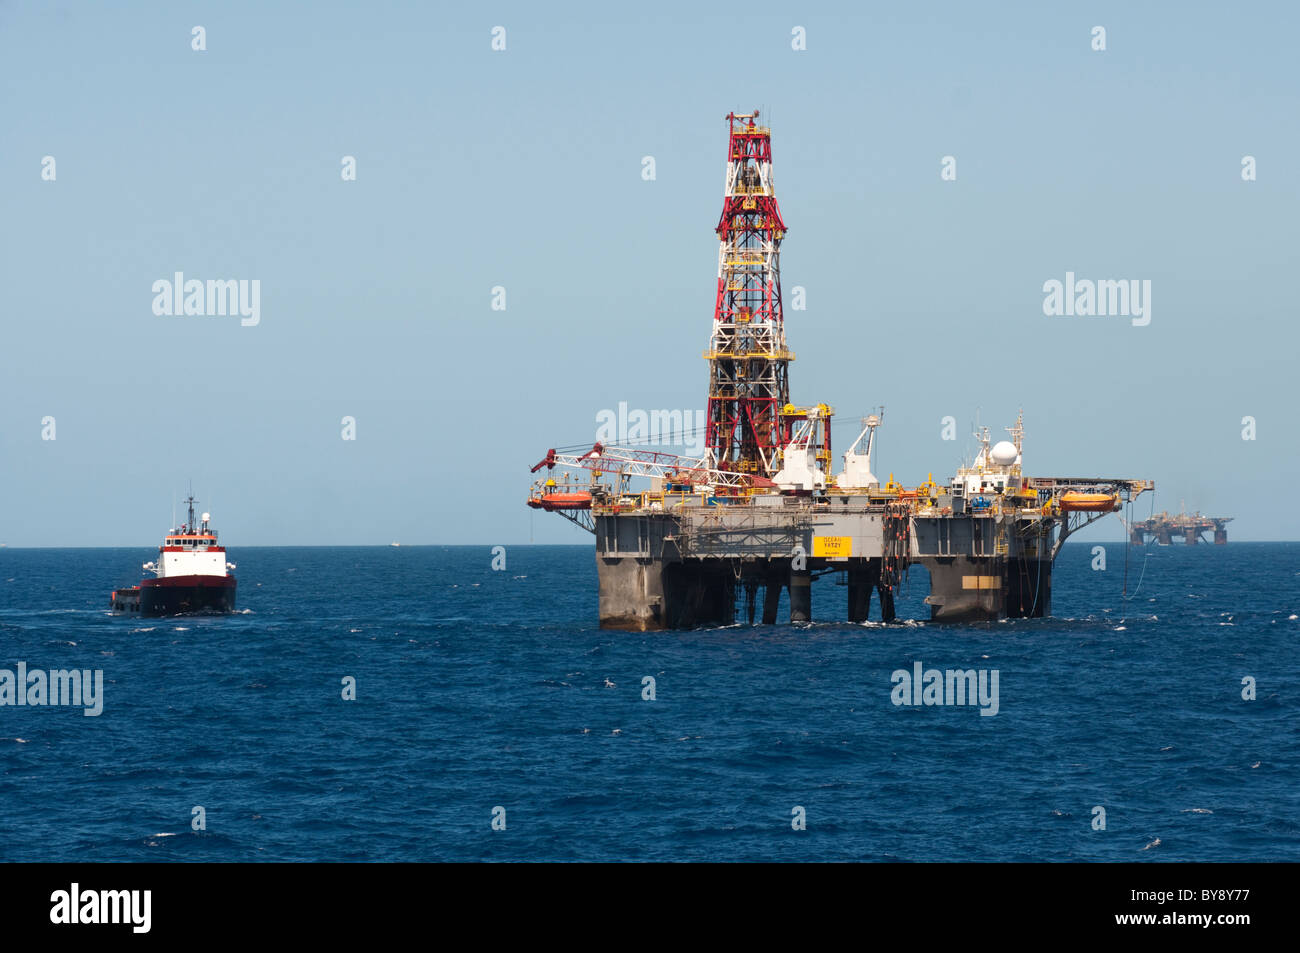 Impianto di perforazione Petrobras SS37 nella zona offshore, Campos Basin, stato di Rio de Janeiro, Brasile. Recipiente di alimentazione blu a fianco dello scuotipaglia. Foto Stock